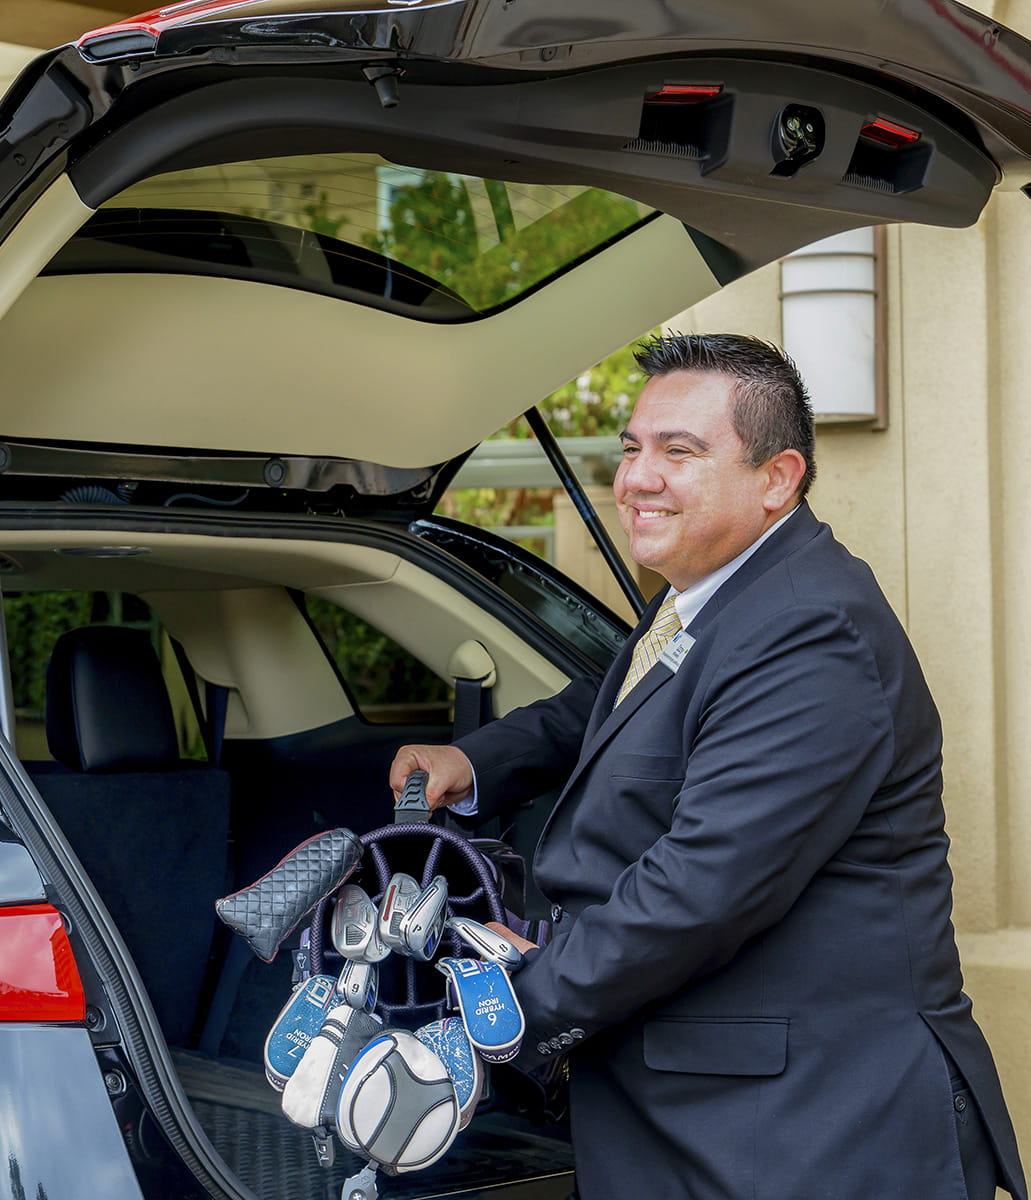 A valet unloads golf clubs from a car.